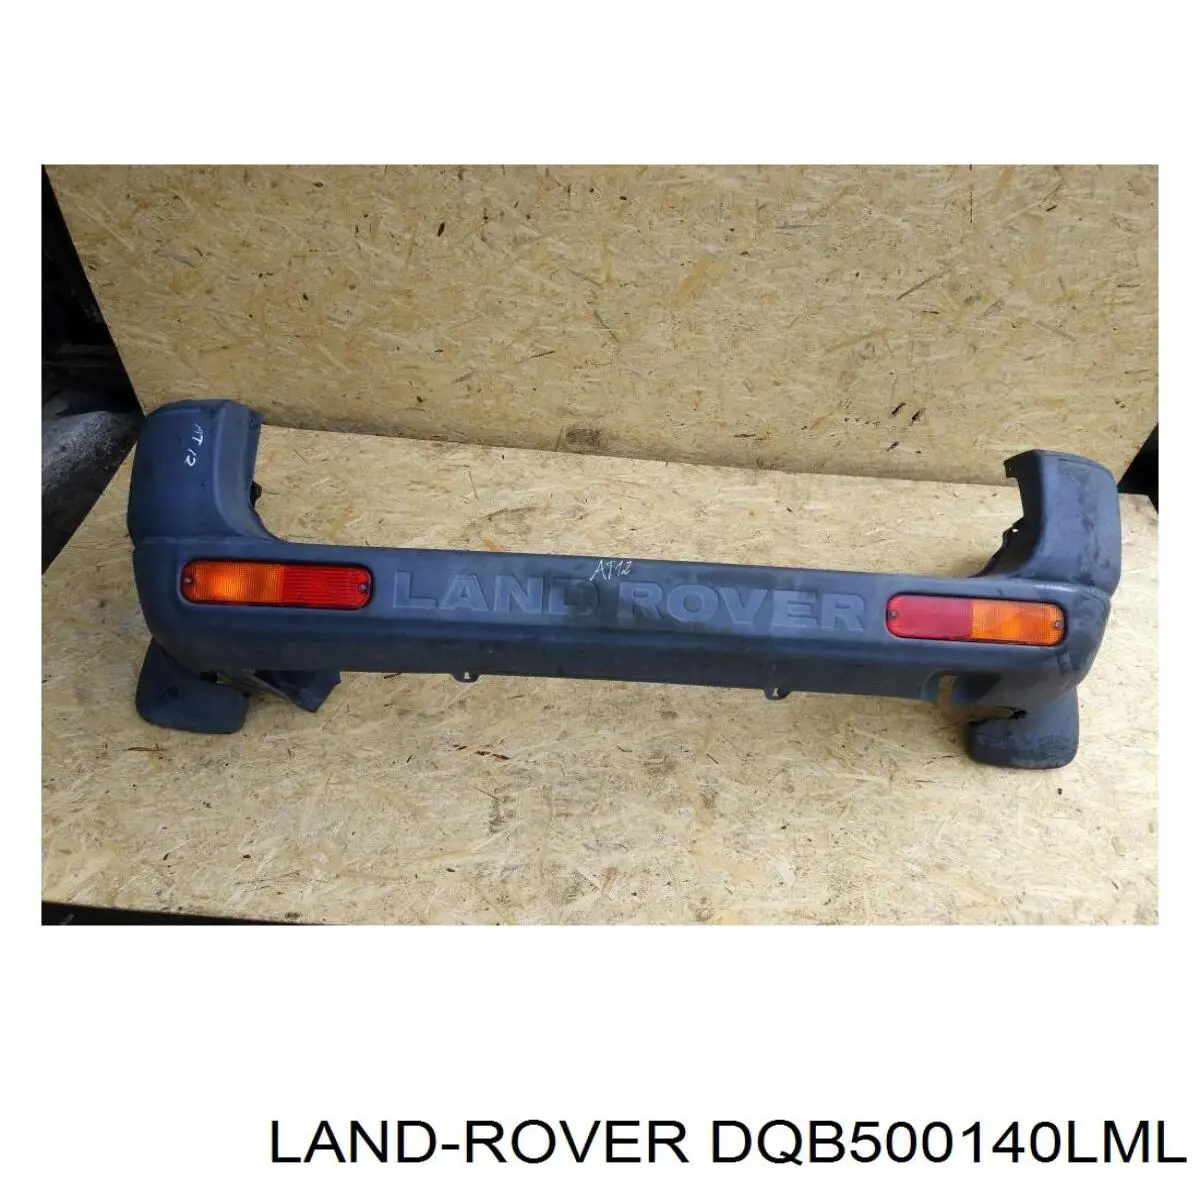 DQB500190LML Land Rover parachoques trasero